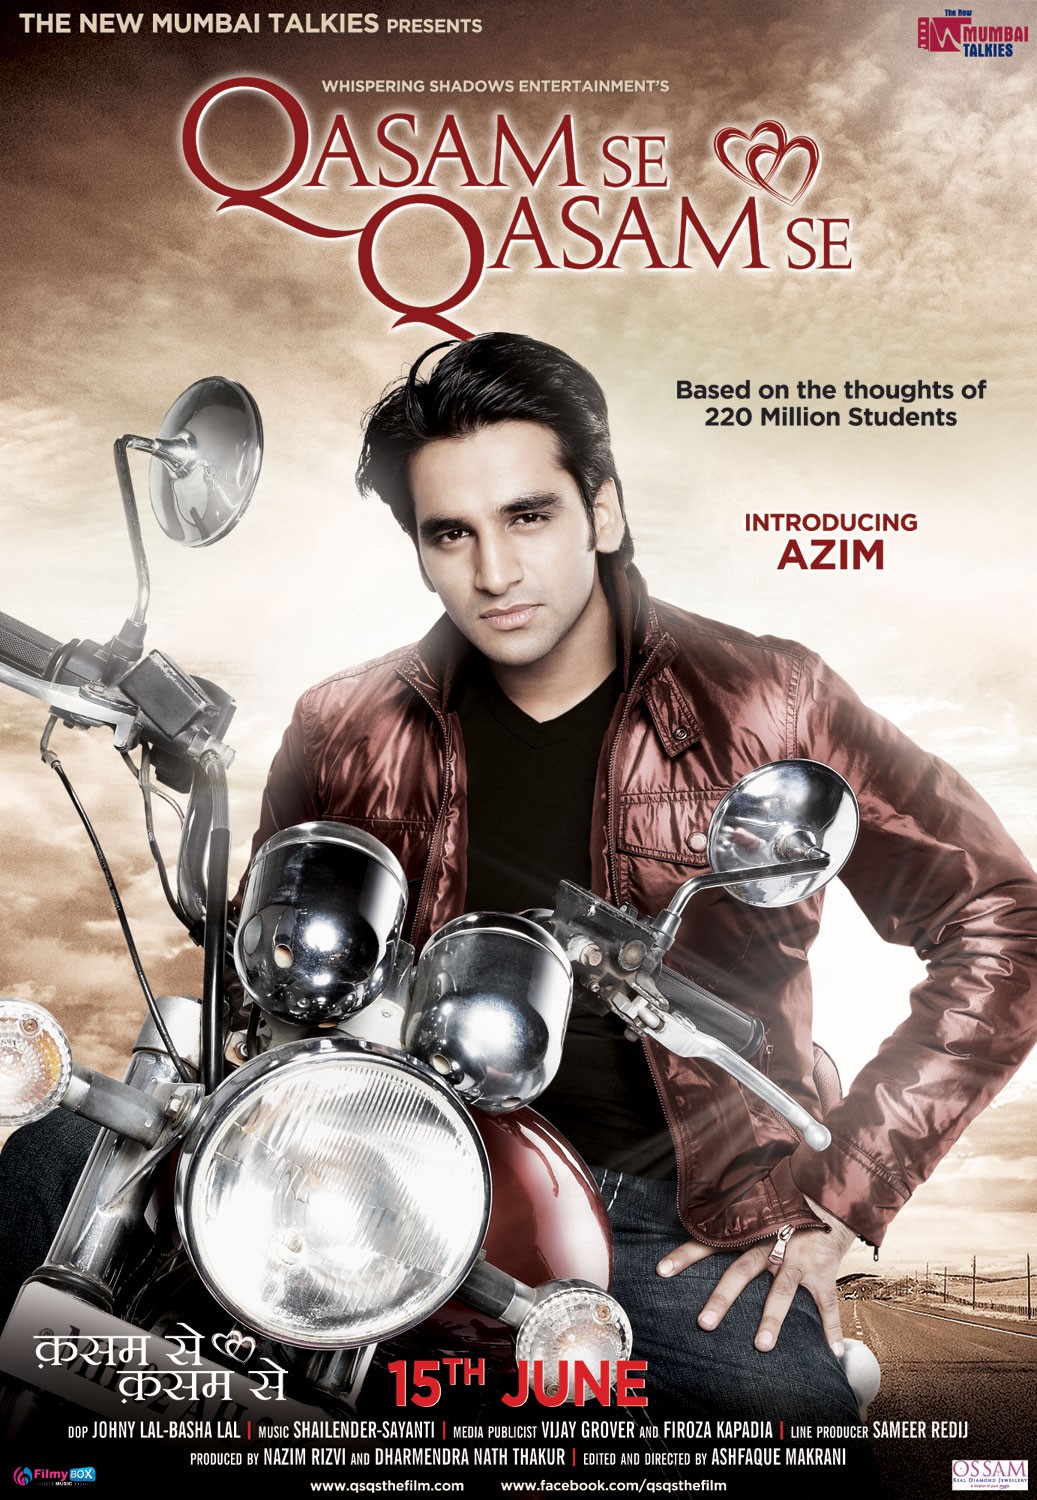 Extra Large Movie Poster Image for Qasam Se Qasam Se (#2 of 5)